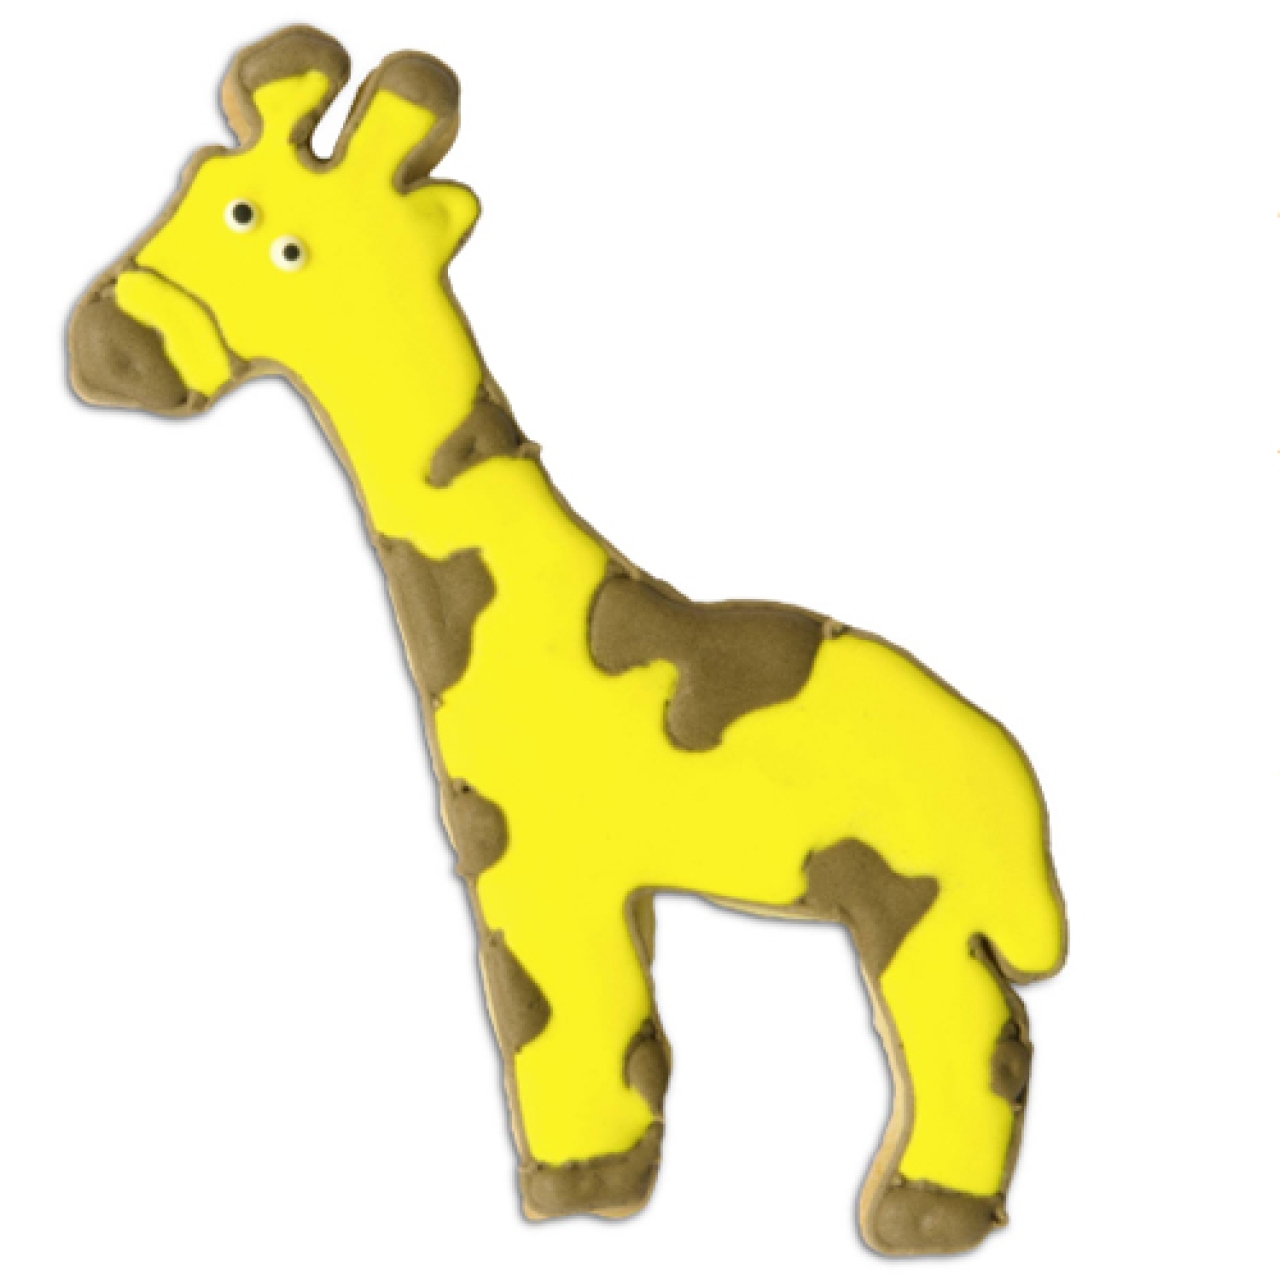 Plätzchen Ausstecher "Giraffe" 12,5 cm für Kekse